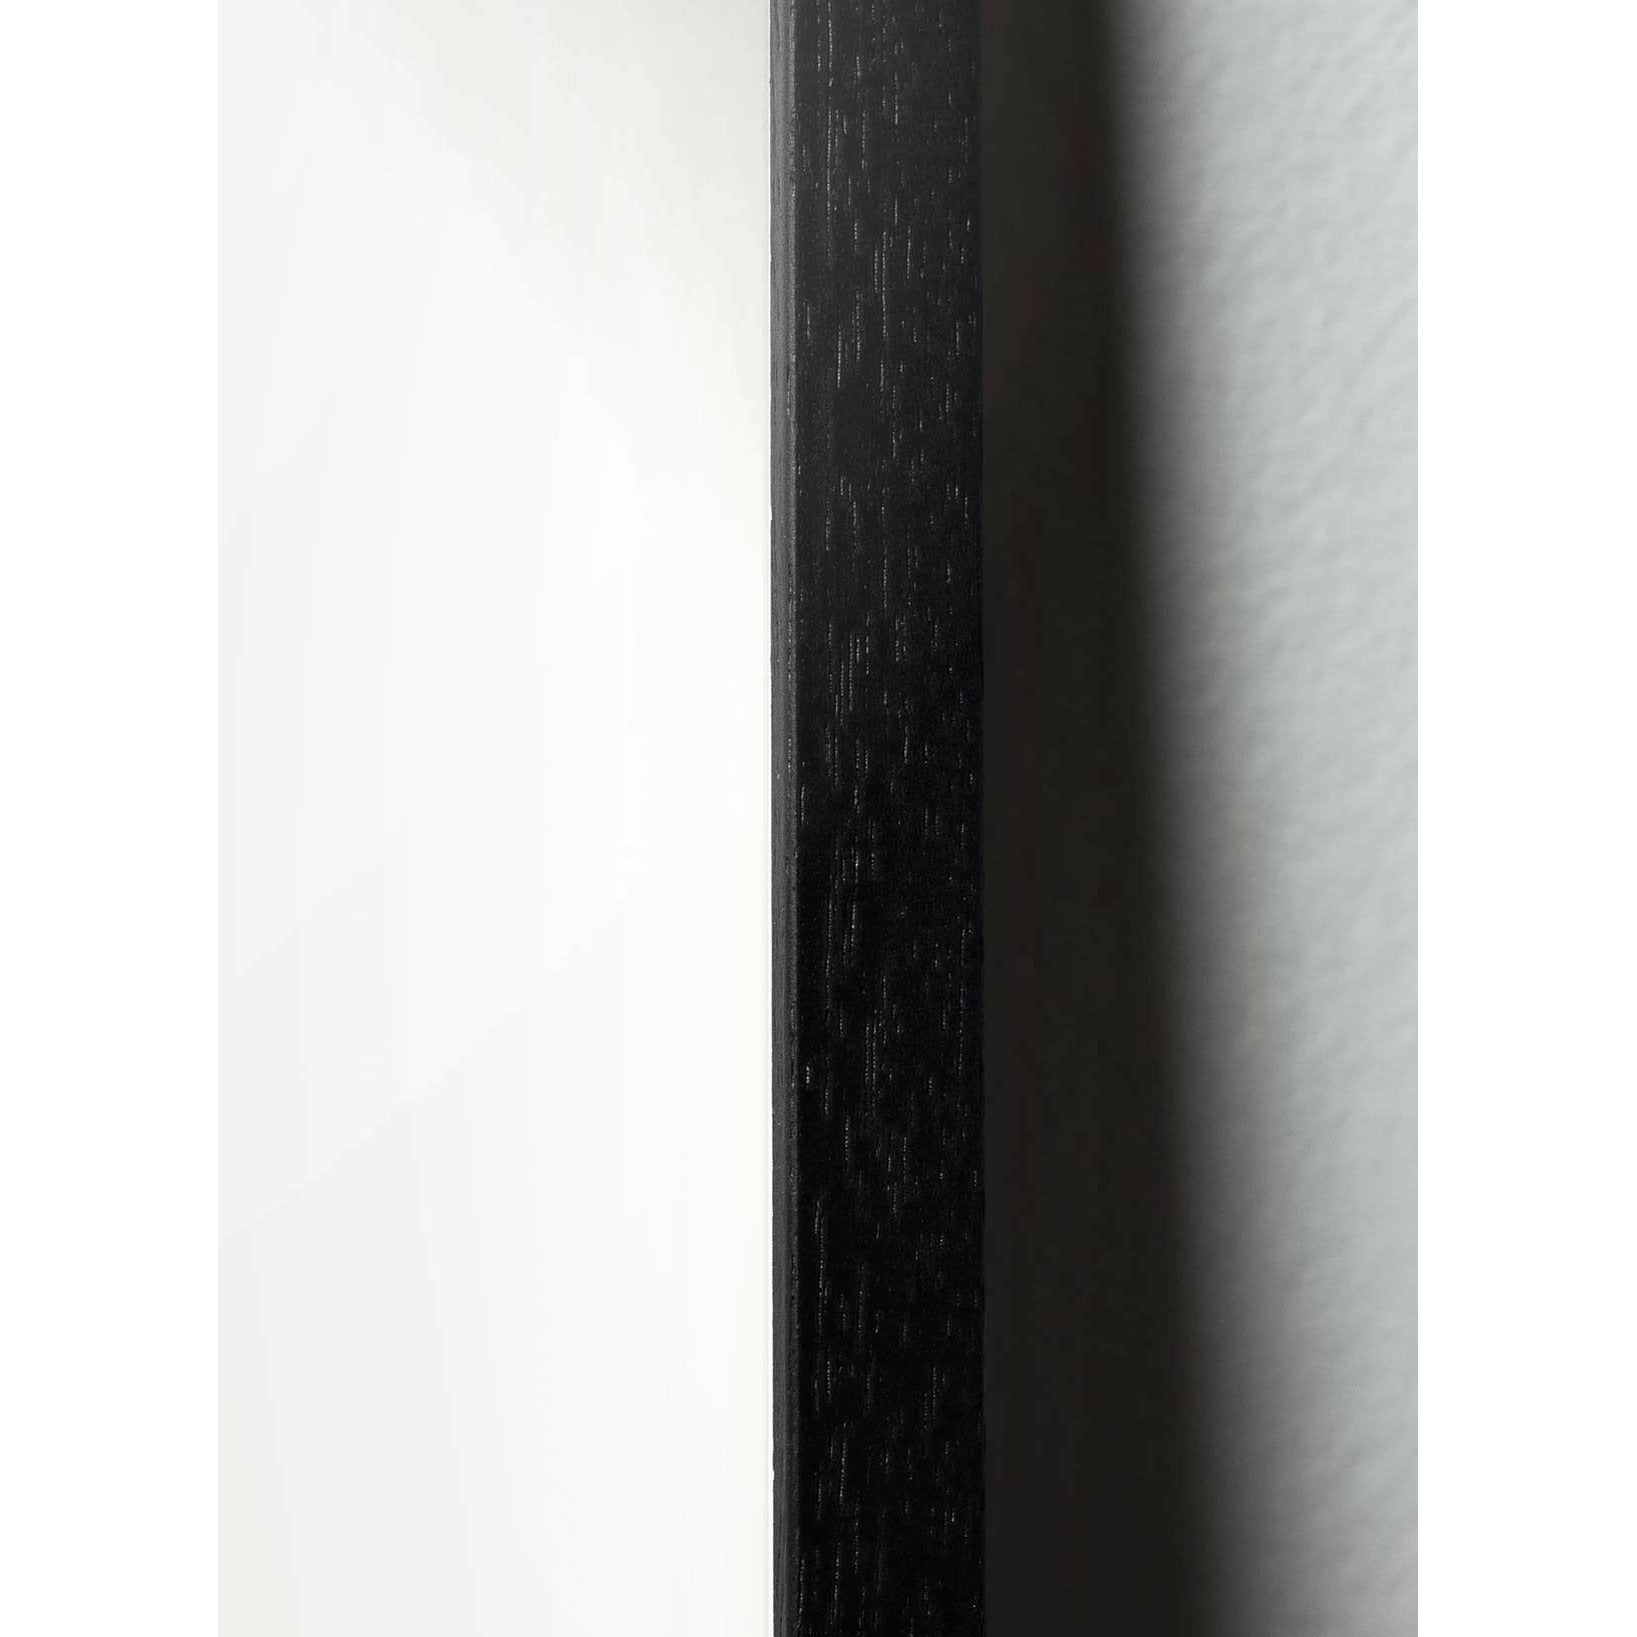 Brainchild Affiche de la ligne de fourmi, cadre en bois laqué noir 70x100 cm, fond blanc